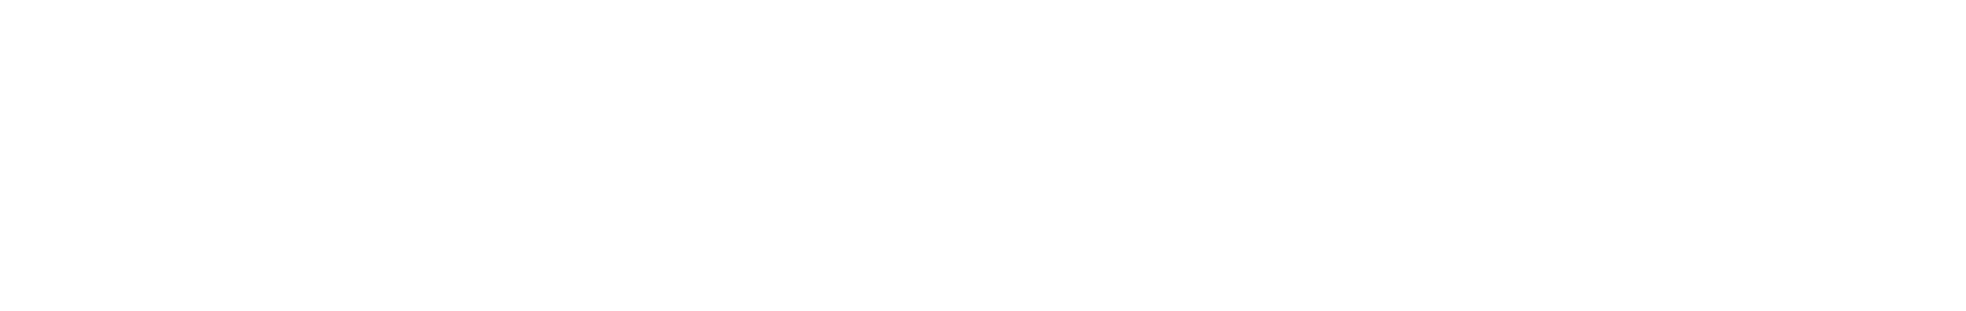 equity films logo